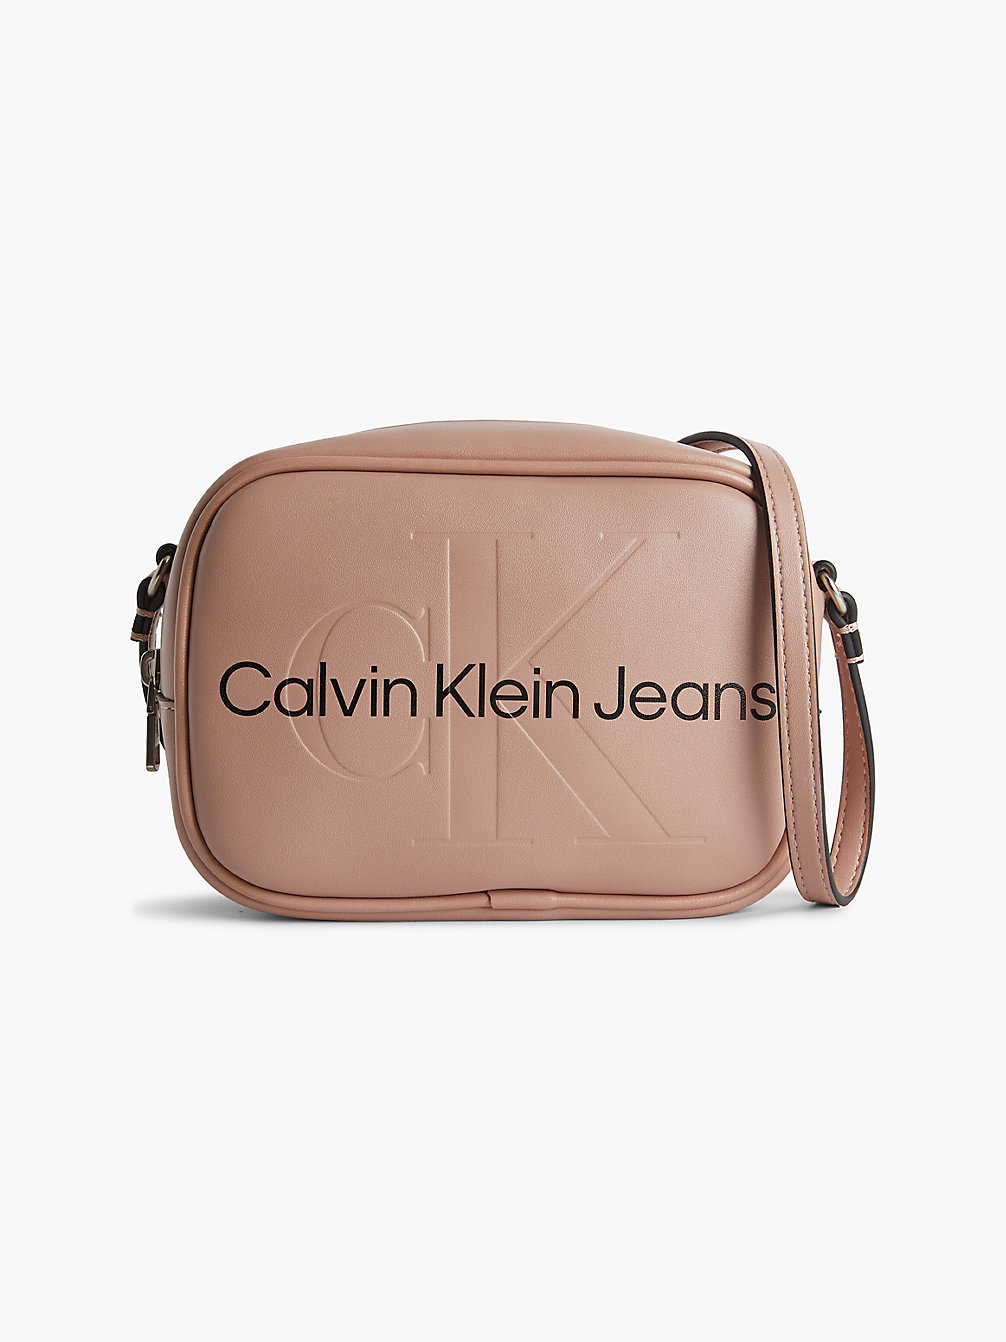 DARK BLUSH Crossbody Bag undefined women Calvin Klein